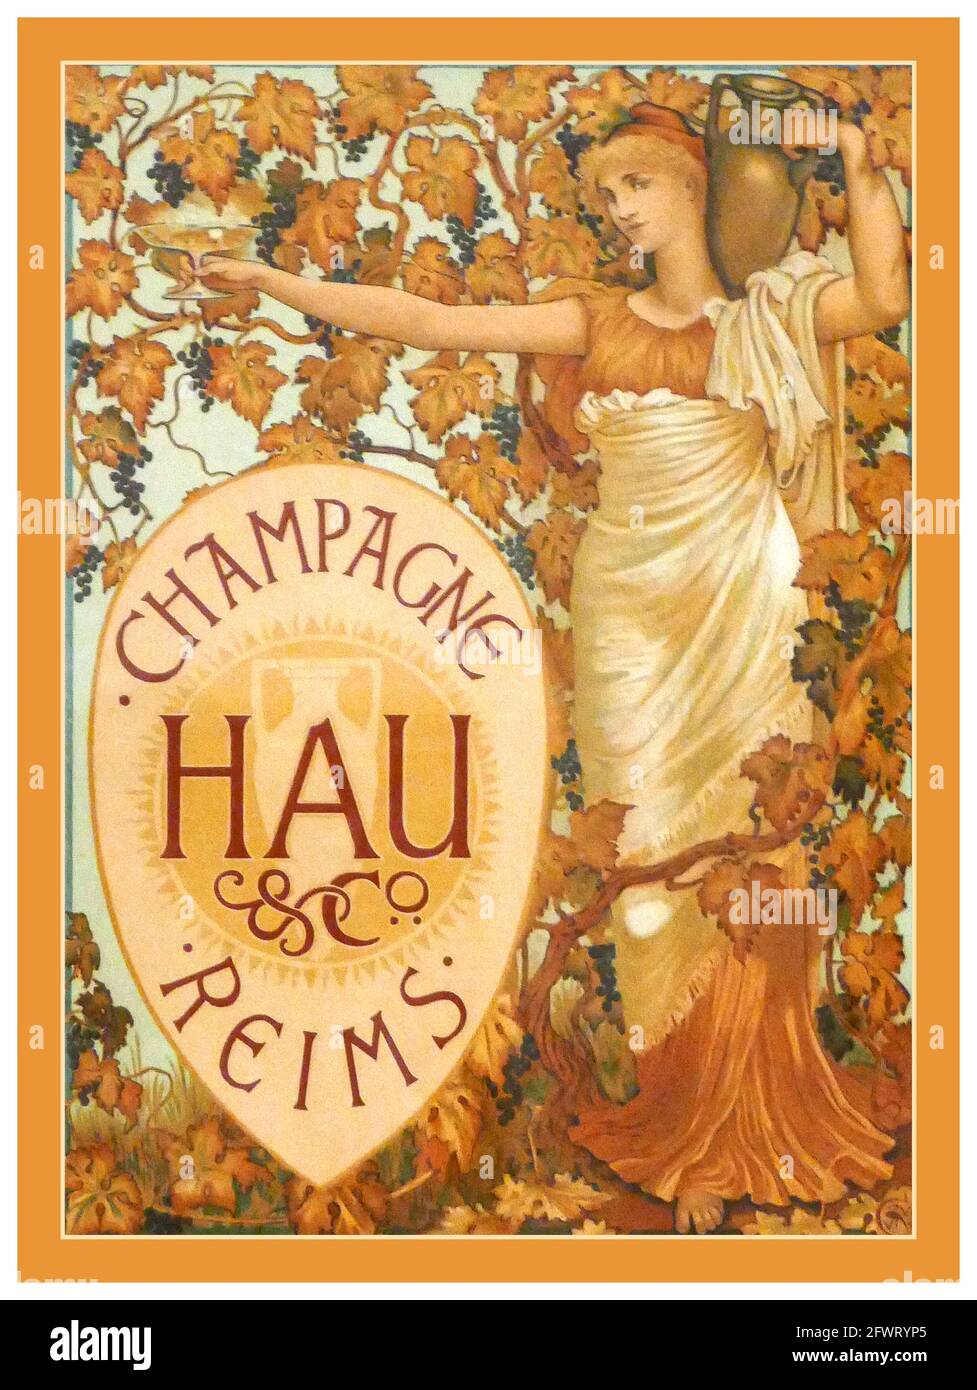 Champagner Hau & Co. Im Vintage-Stil der 1890er Jahre im Art déco-Design von Walter Crane. Champagne Reims France (1894) Lithographische Plakatkunst in Farbe Stockfoto